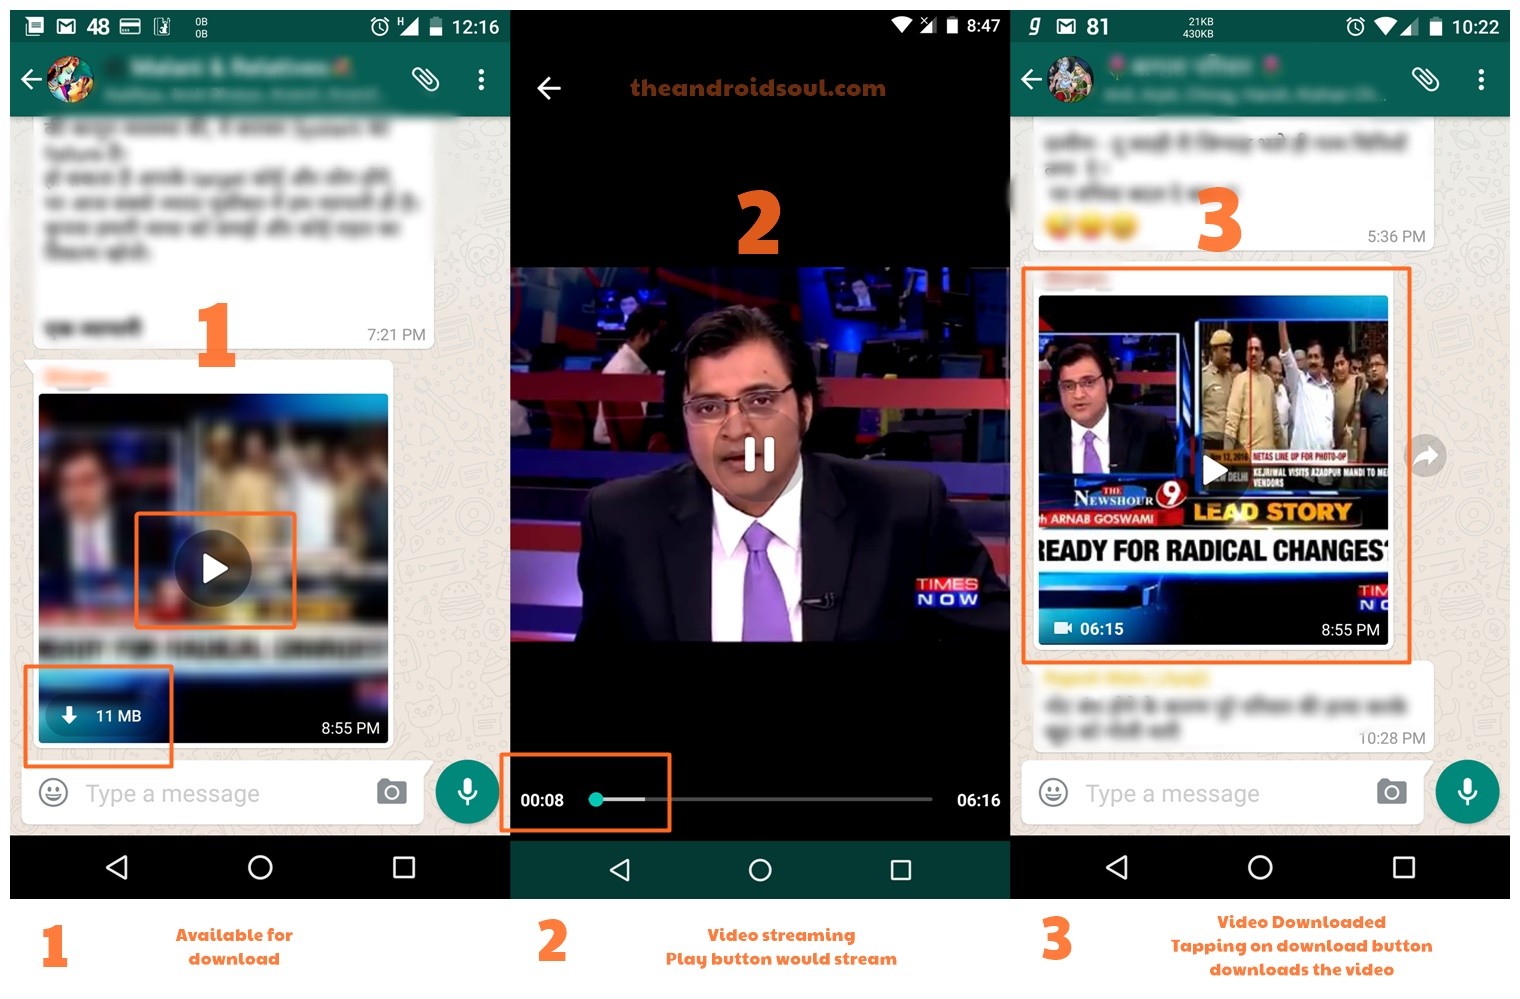 La transmisión de video de WhatsApp ahora está disponible en India, le permite ver videos sin descargar